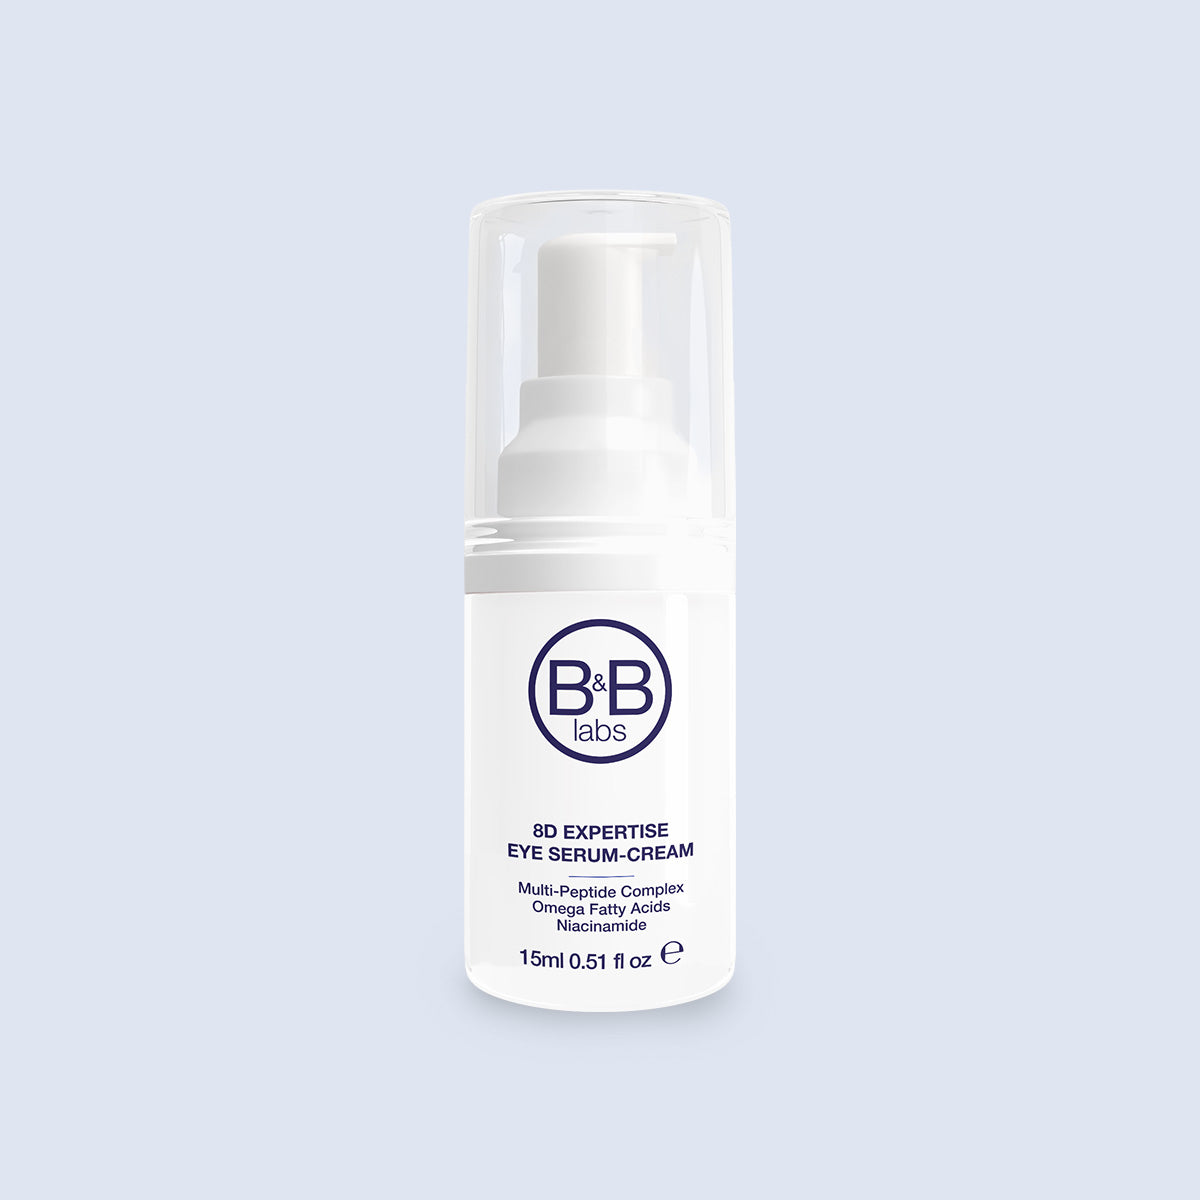 8D Expertise Eye Serum-Cream